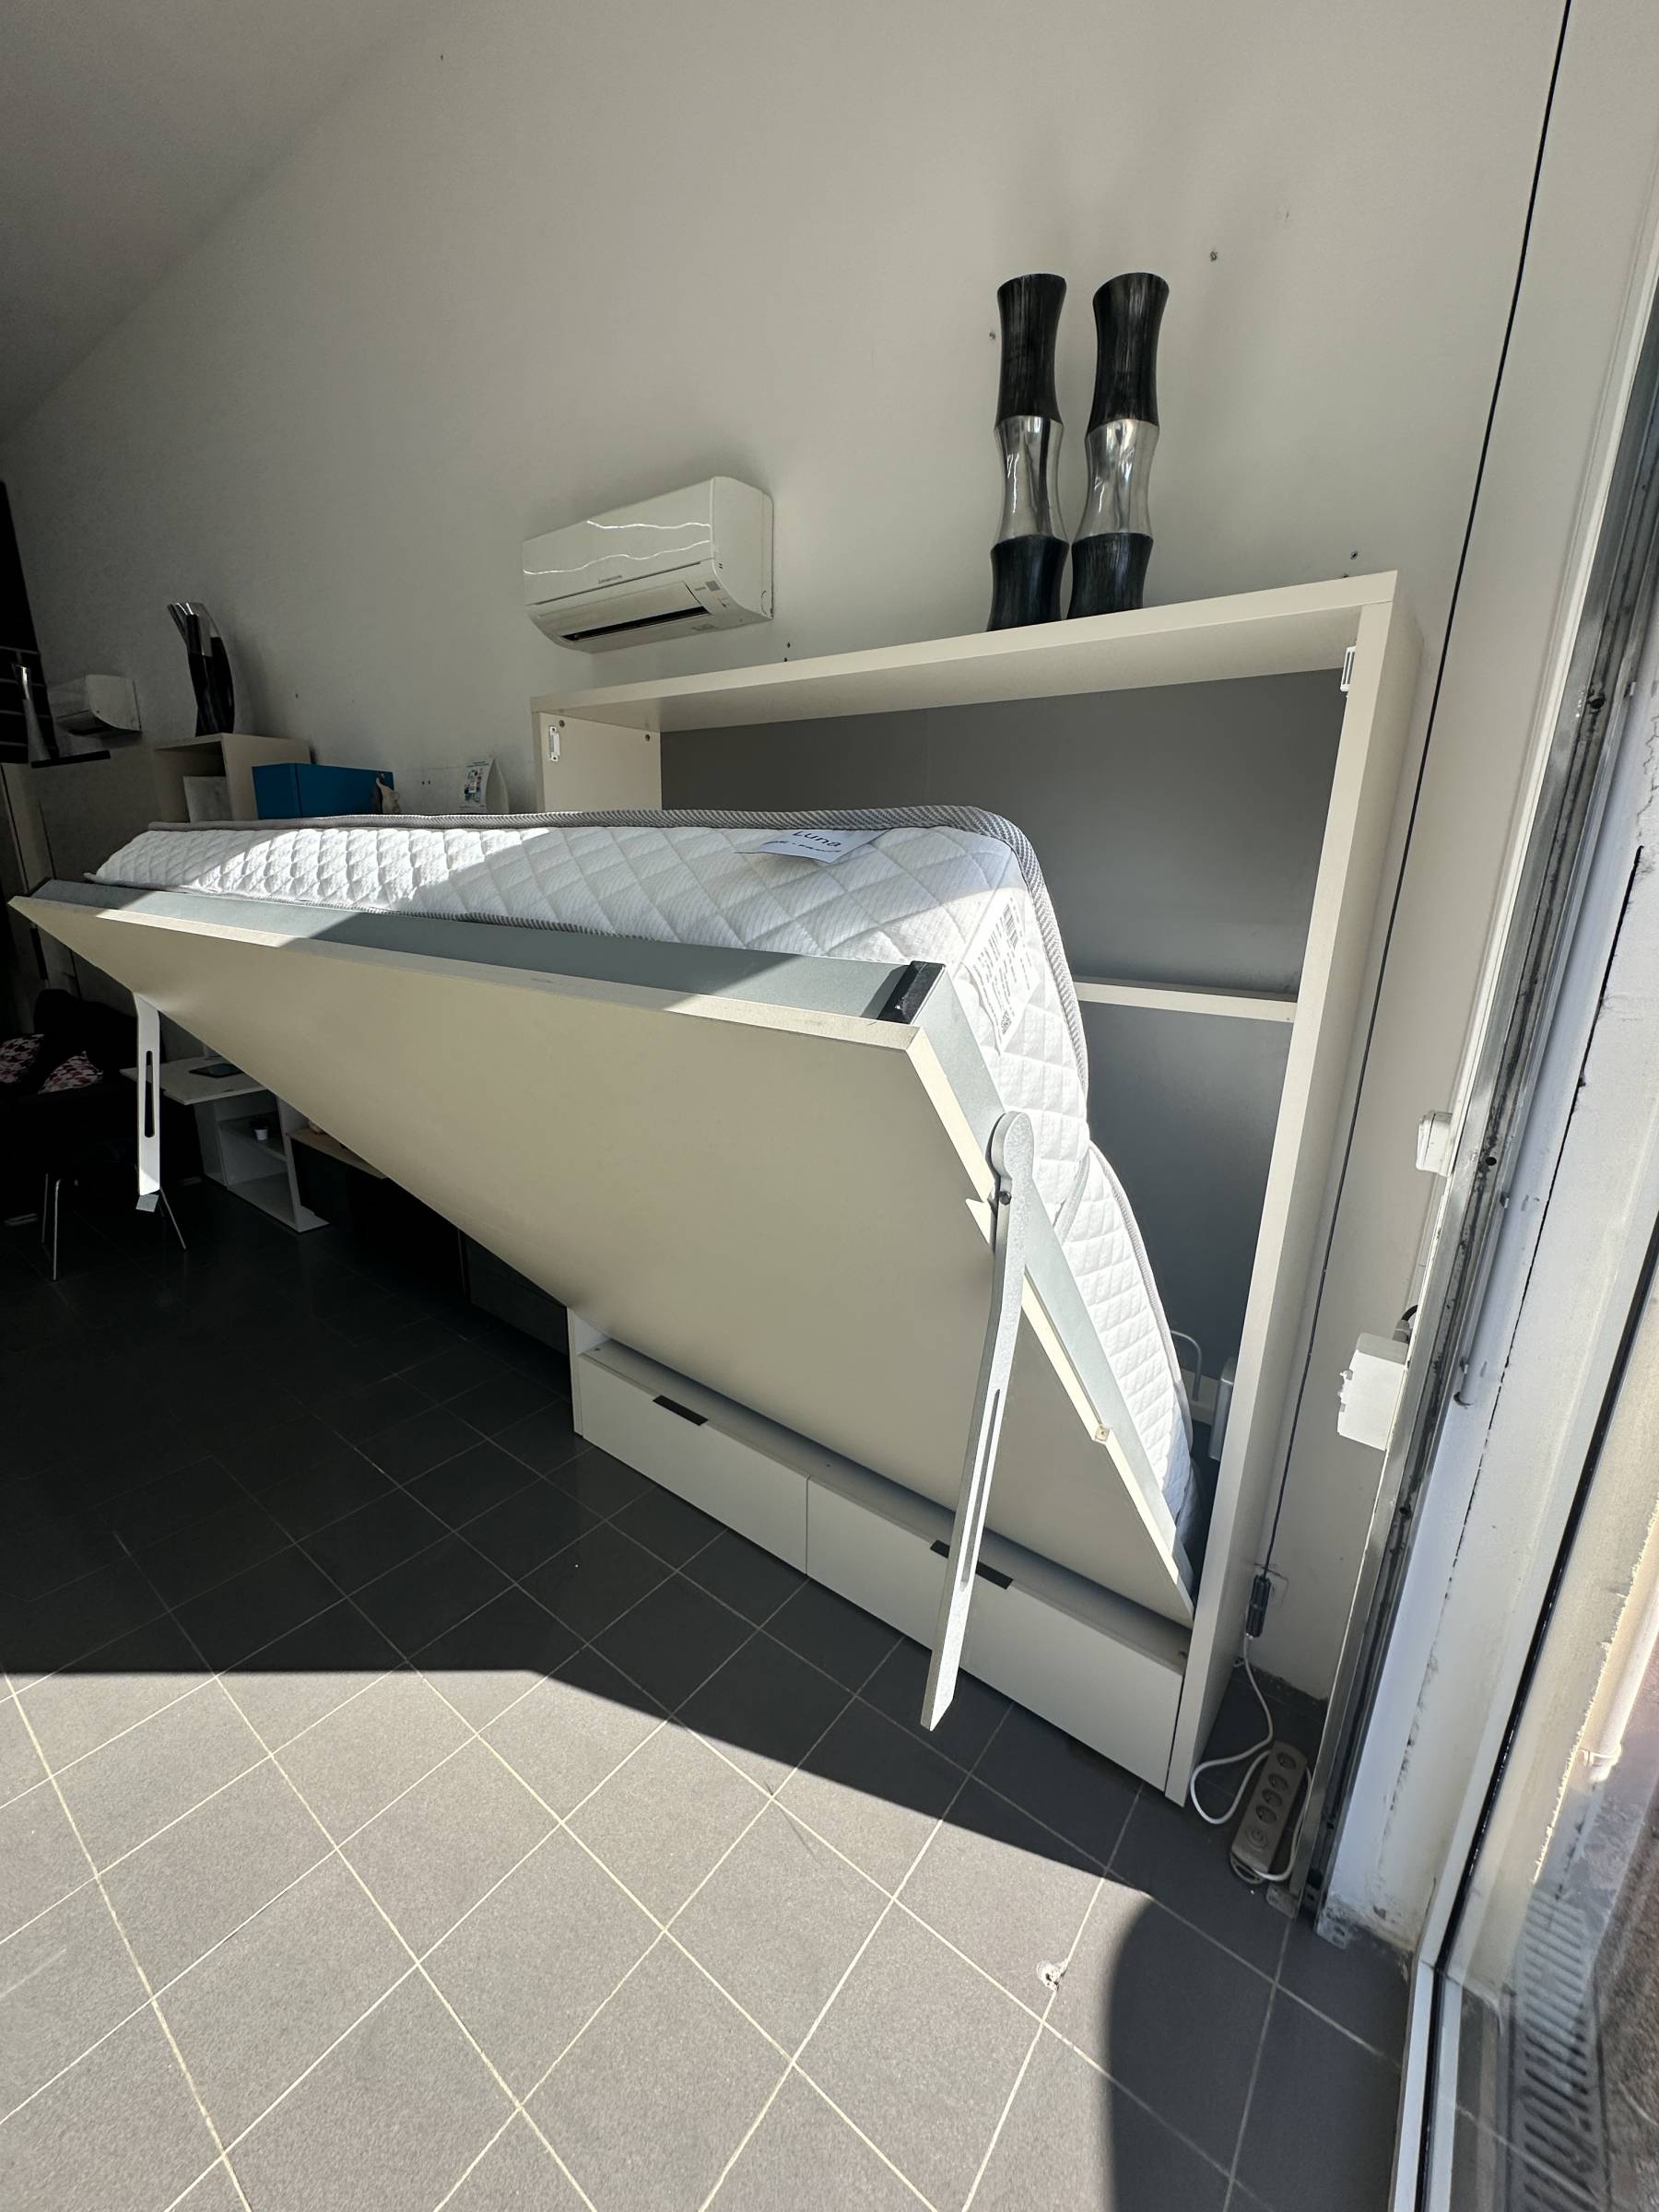 Flash sur le lit escamotable avec large couchage  de 180 cm parfait pour 2 personnes de grande taille et en vente entre Toulon et Marseille !